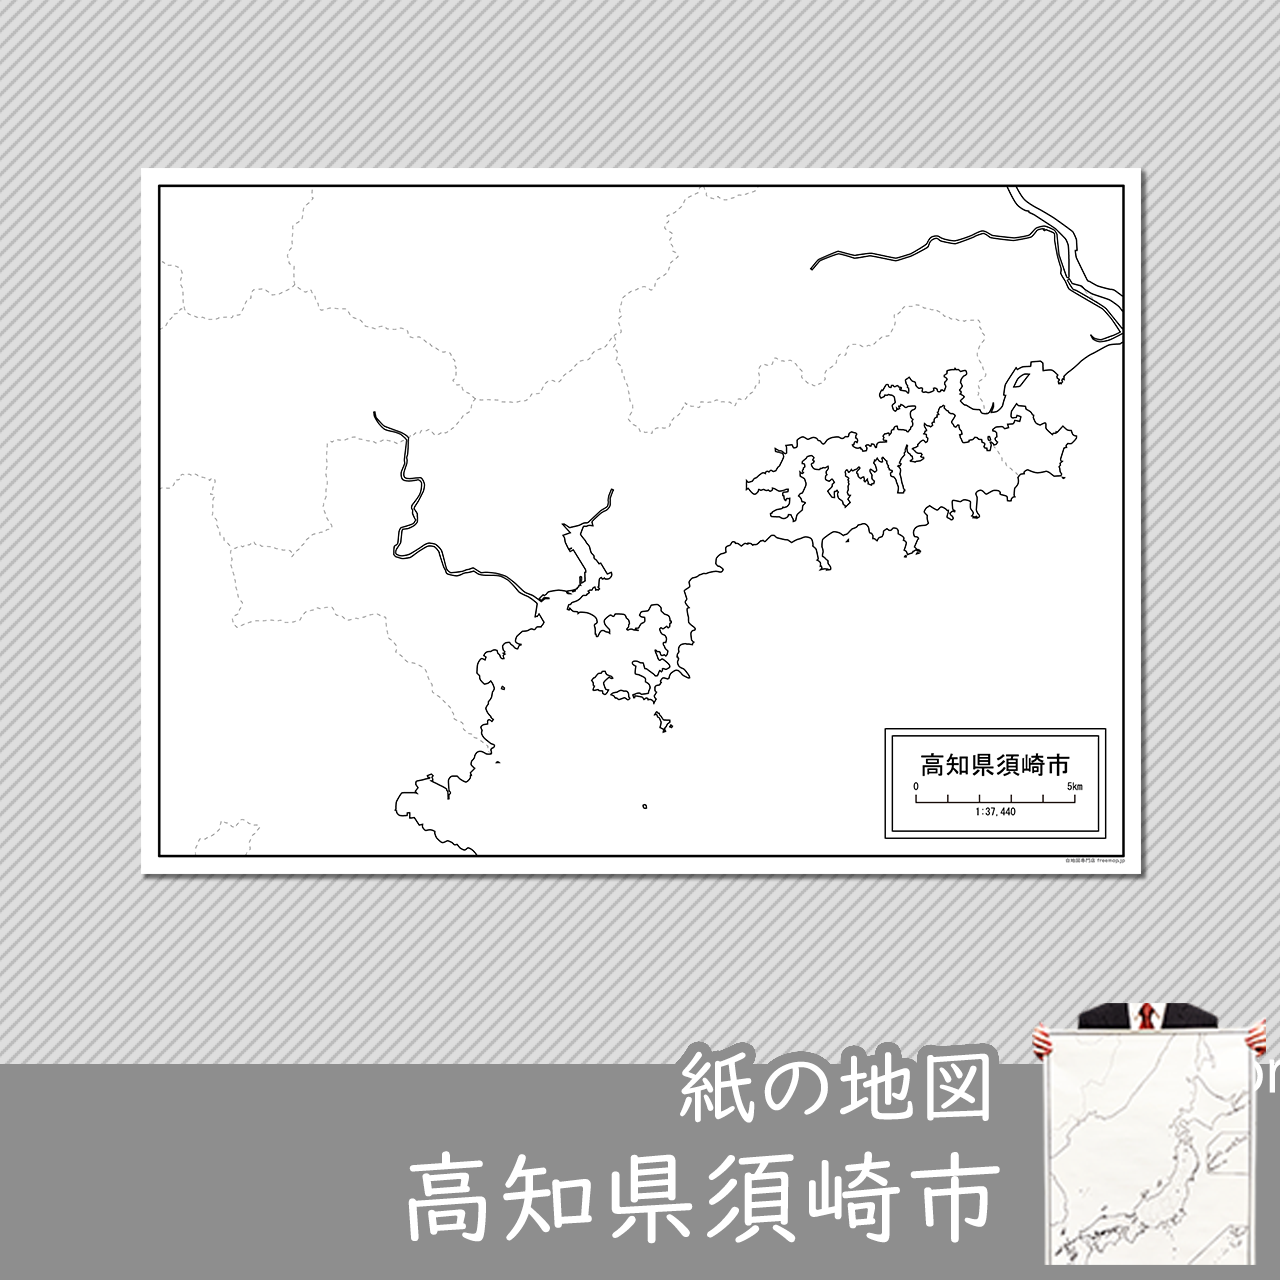 須崎市の紙の白地図のサムネイル